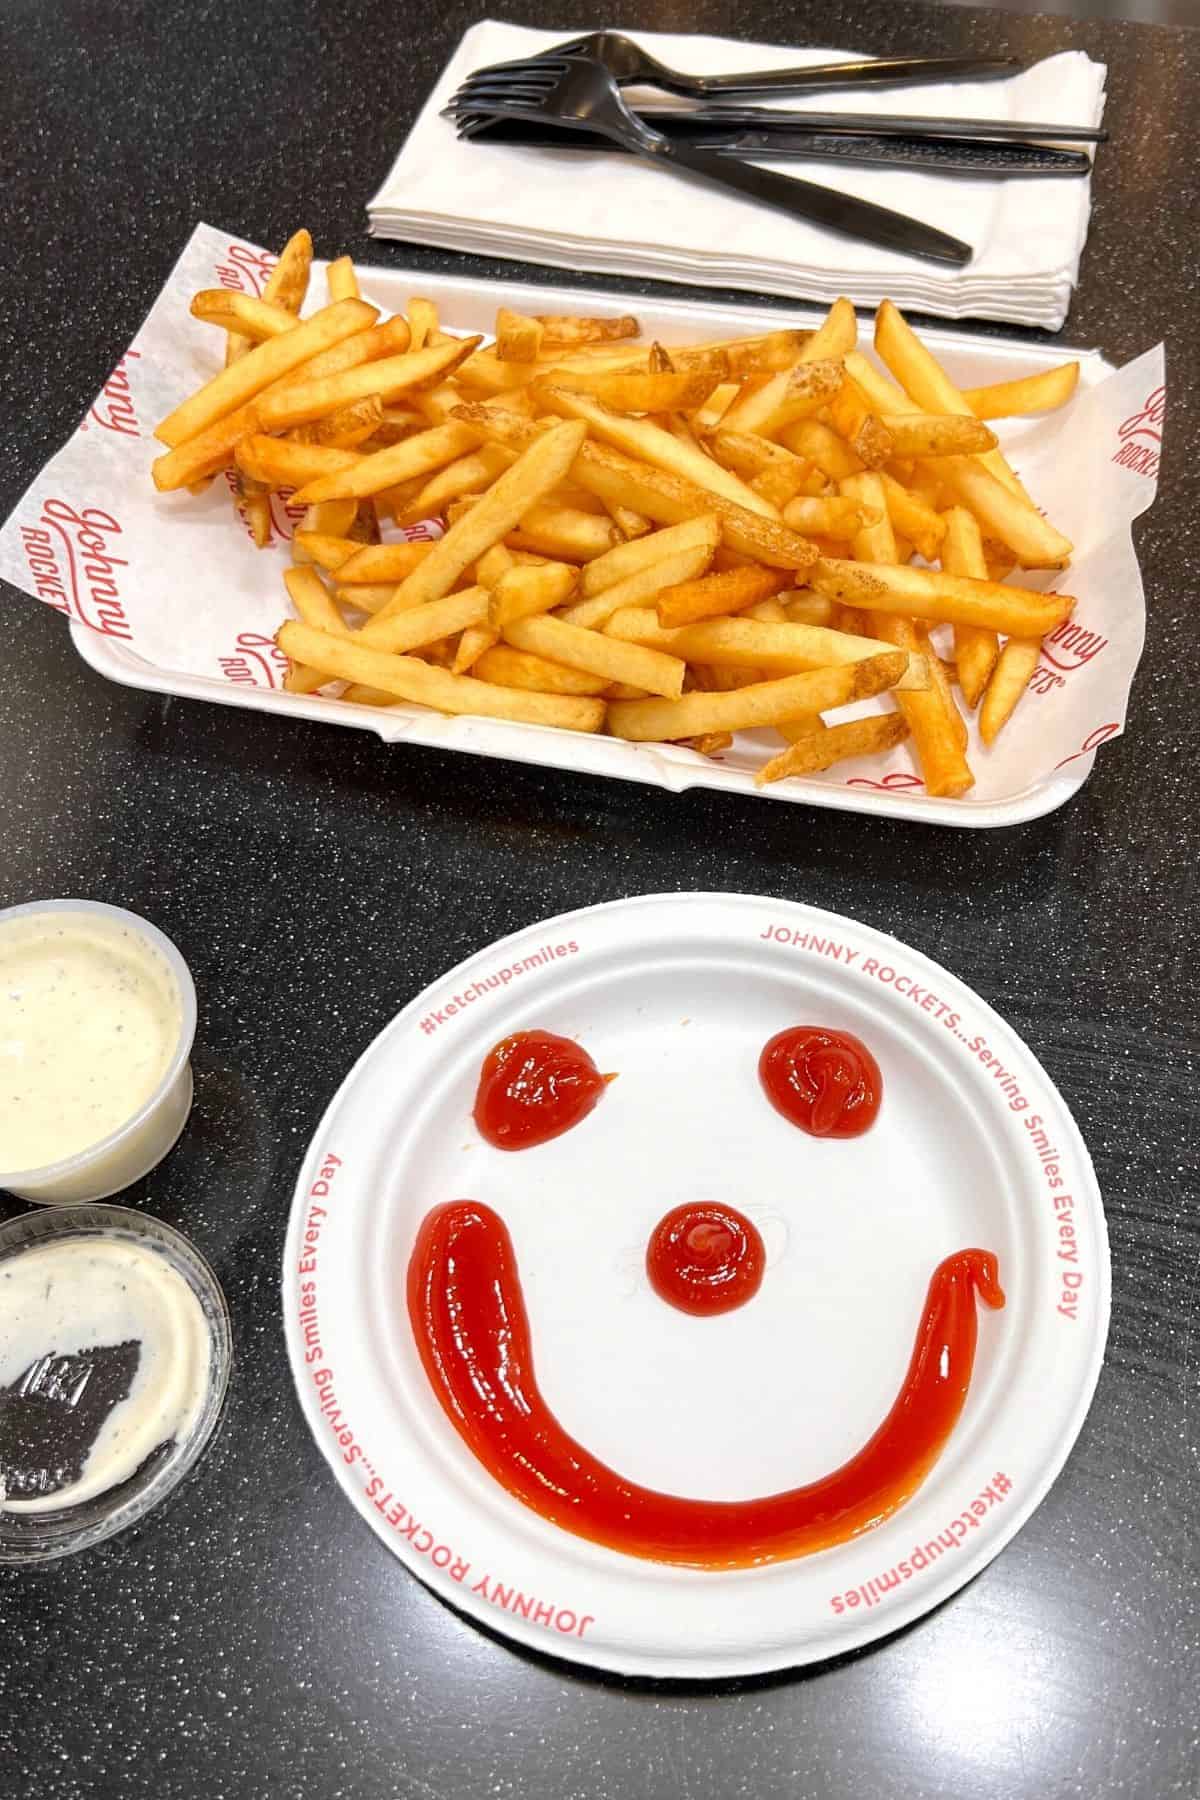 fries and ketchup smiley face at johnny rockets.